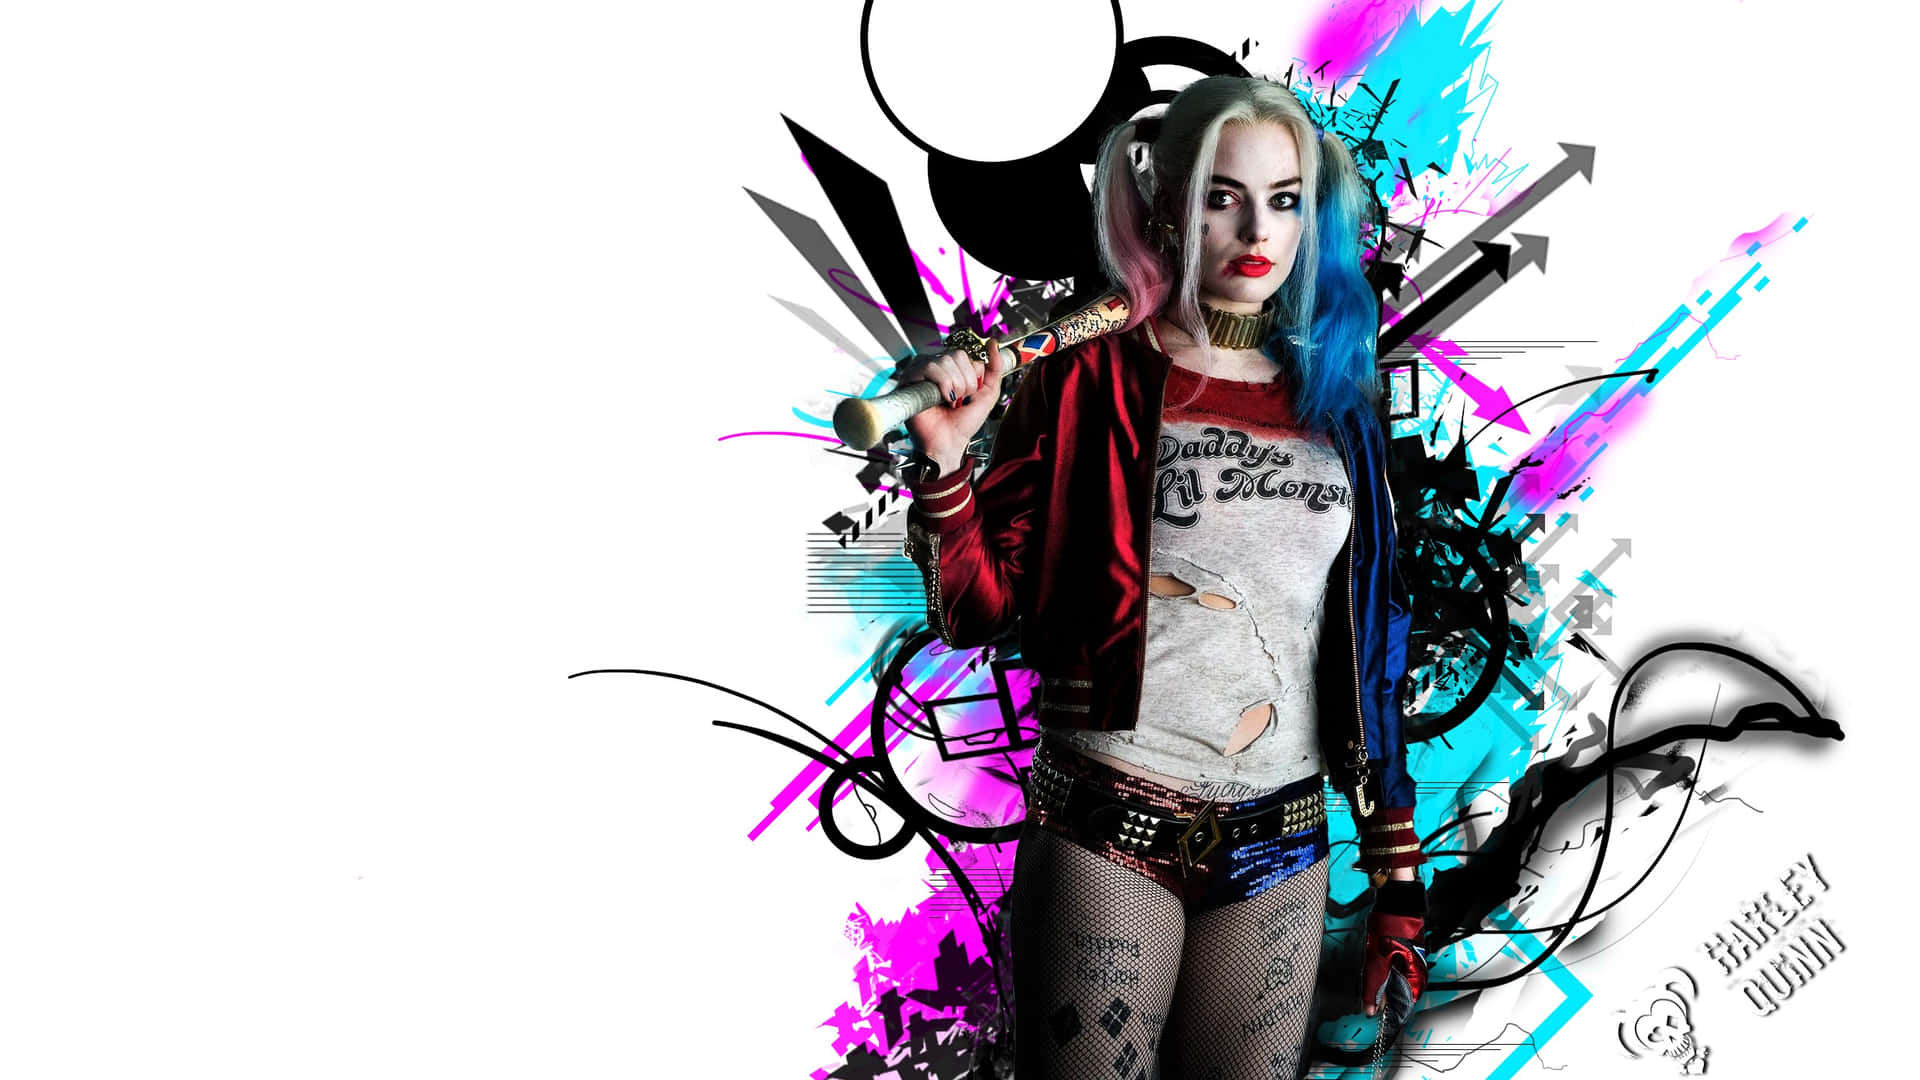 Kærligheden mellem Joker og Harley Quinn fra Suicide Squad. Wallpaper